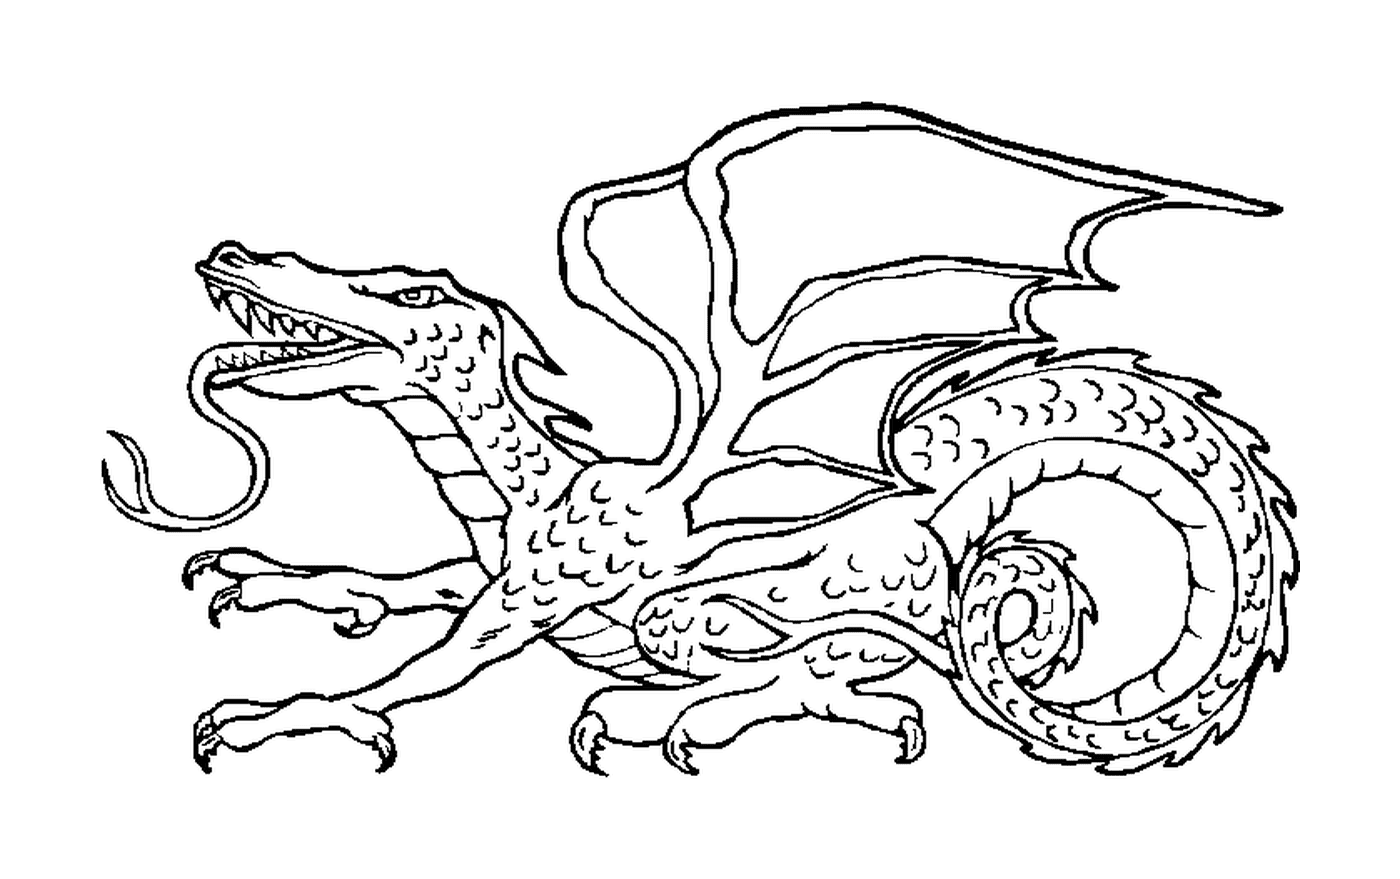  Um dragão com as asas para fora 